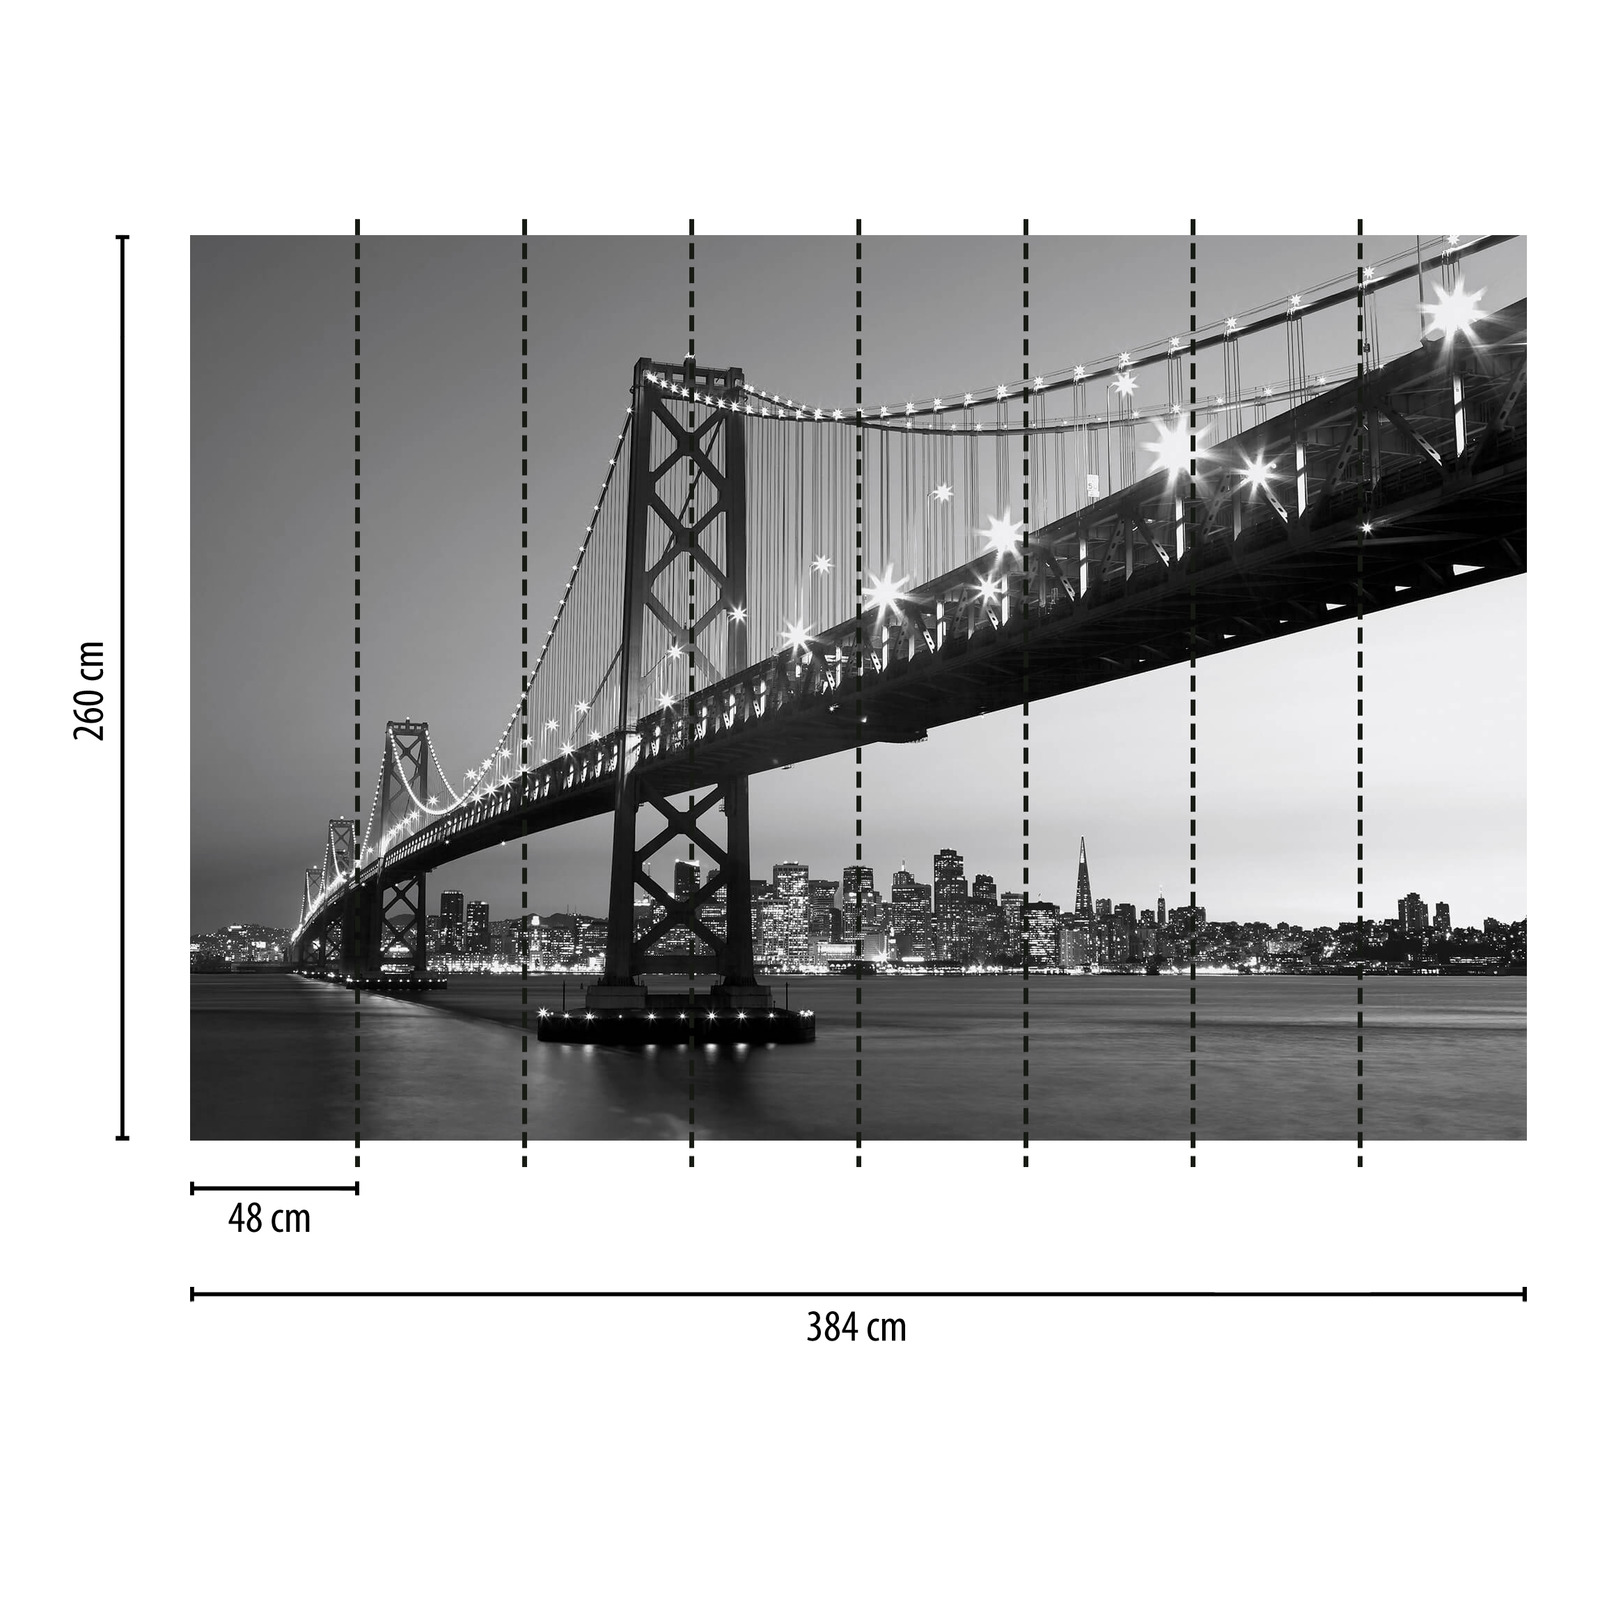             Mural en blanco y negro del horizonte y el puente de San Francisco
        